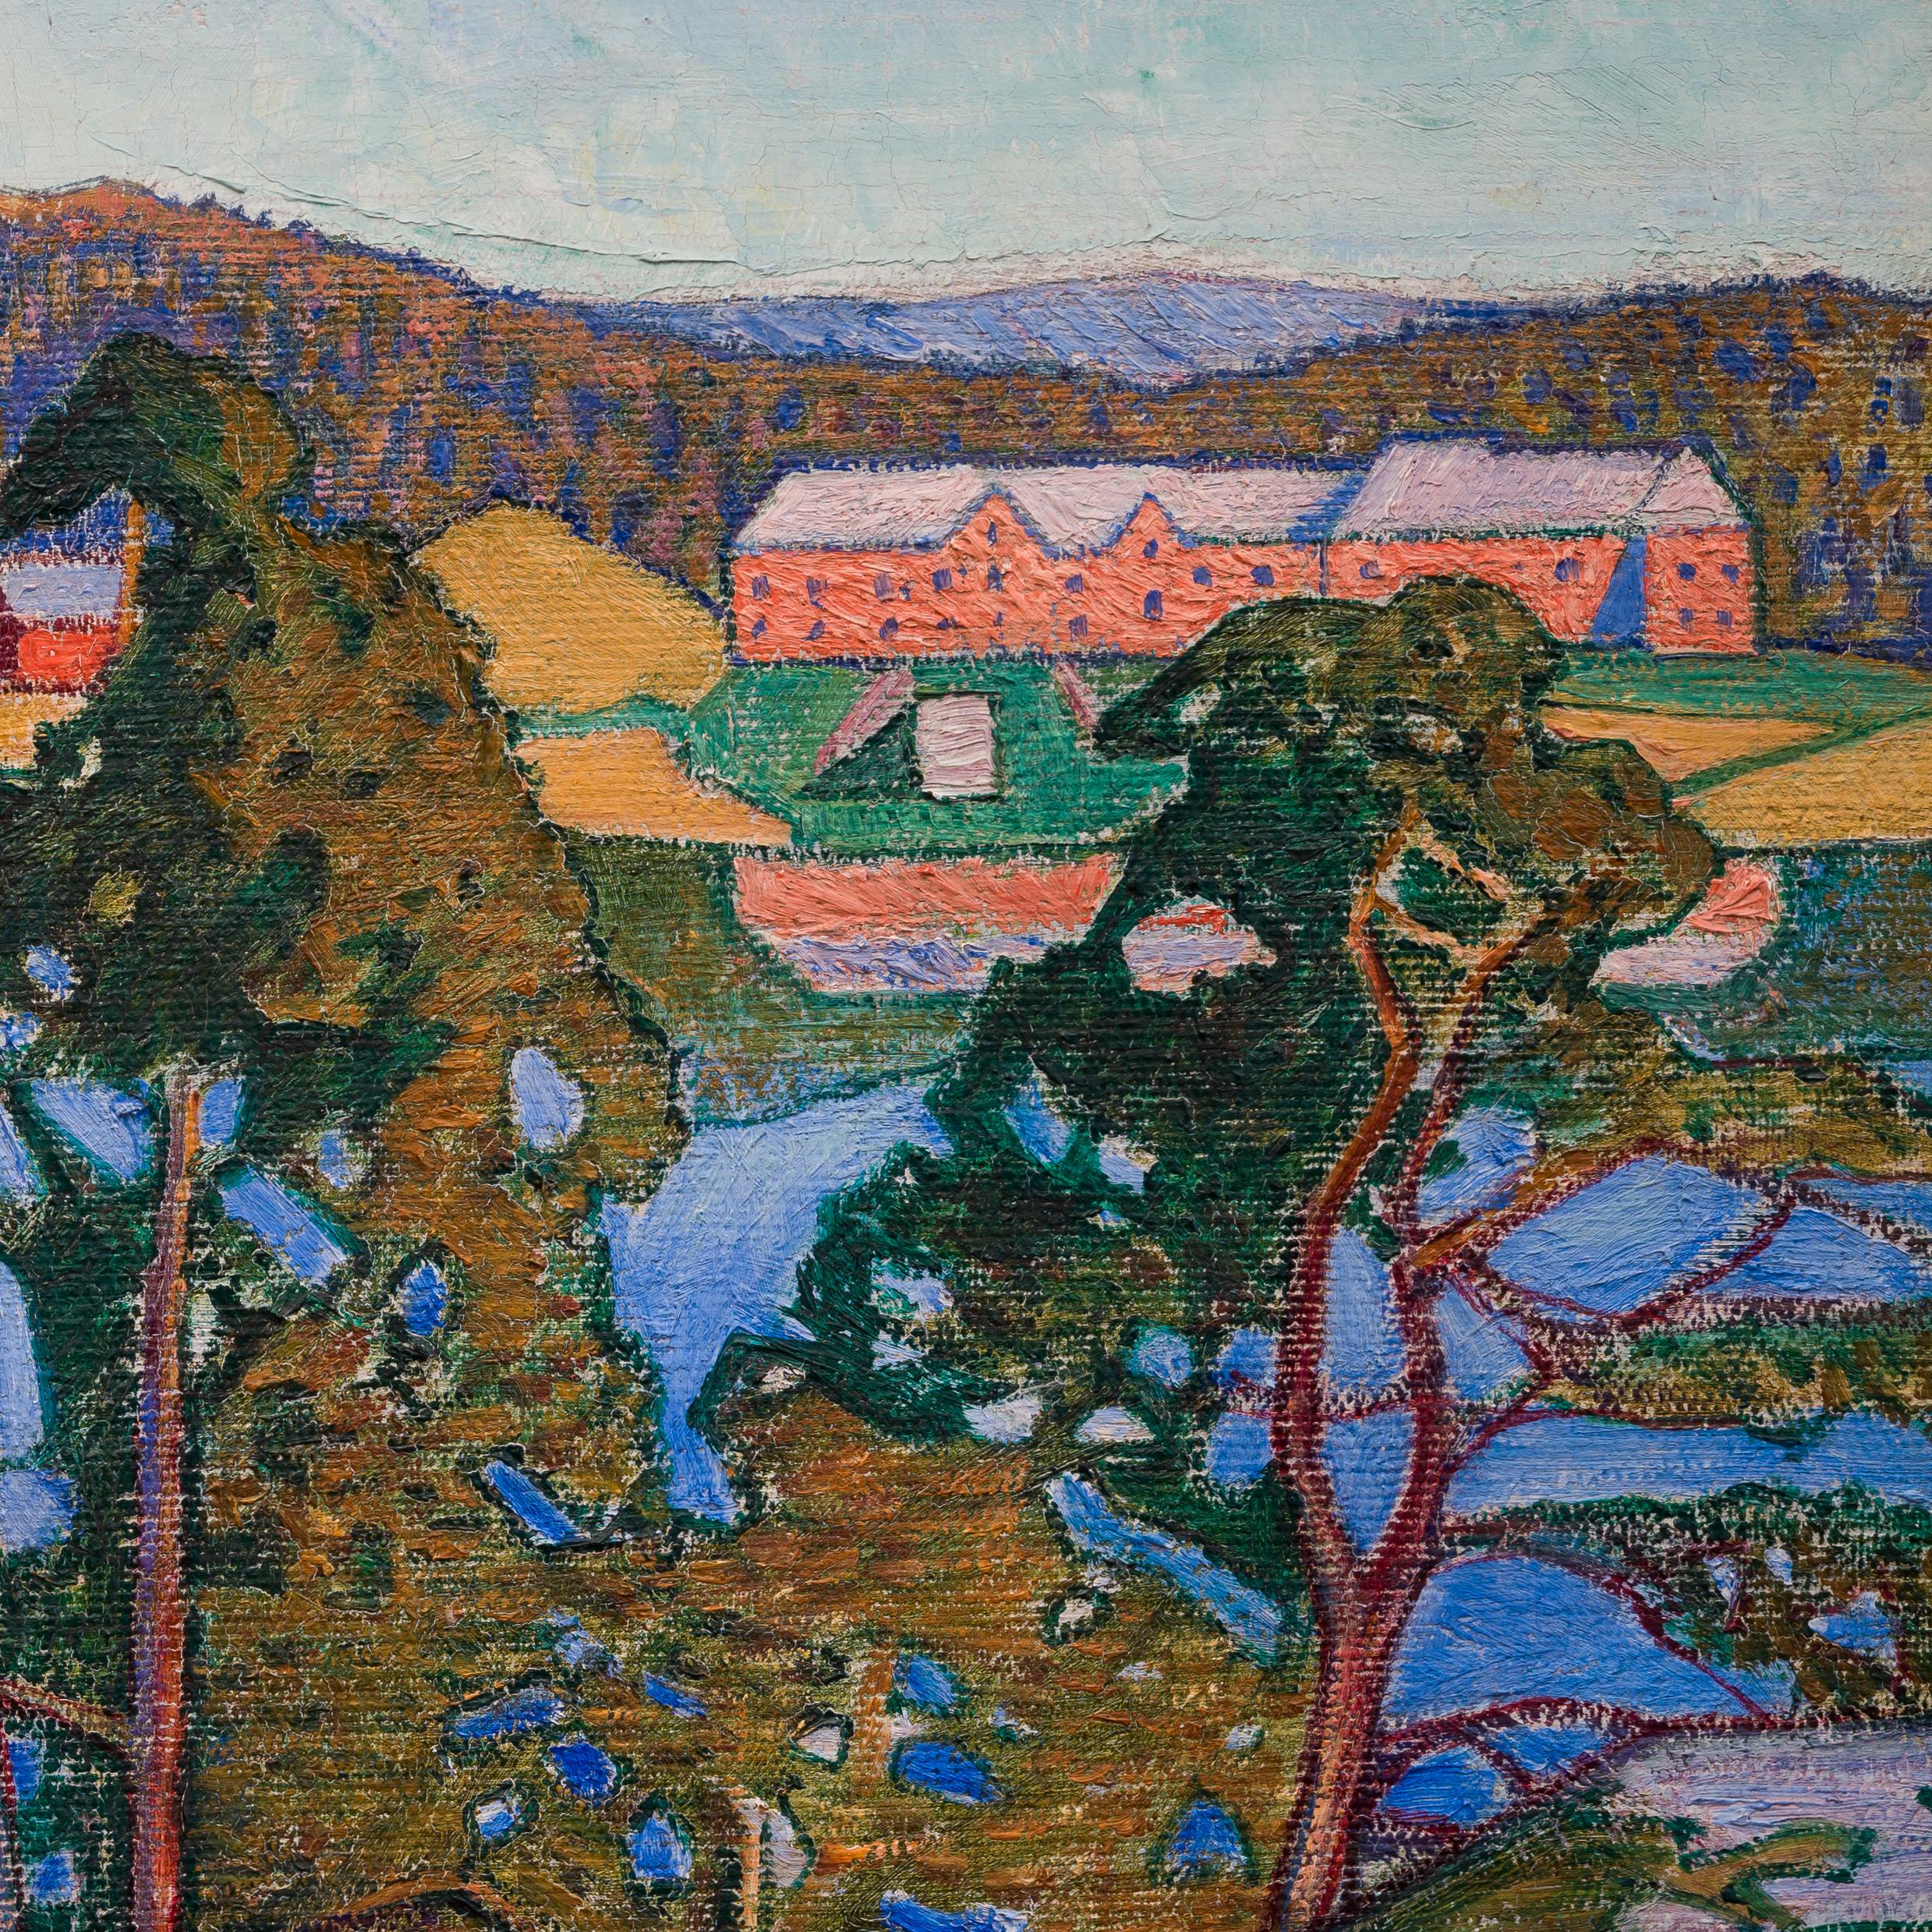 Nous sommes ravis de présenter cette peinture de paysage de l'artiste suédois Gabriel Strandberg (1885-1966). Bien que le lieu exact soit encore inconnu, la beauté et les caractéristiques de la scène suggèrent les terrains du nord de la Suède,